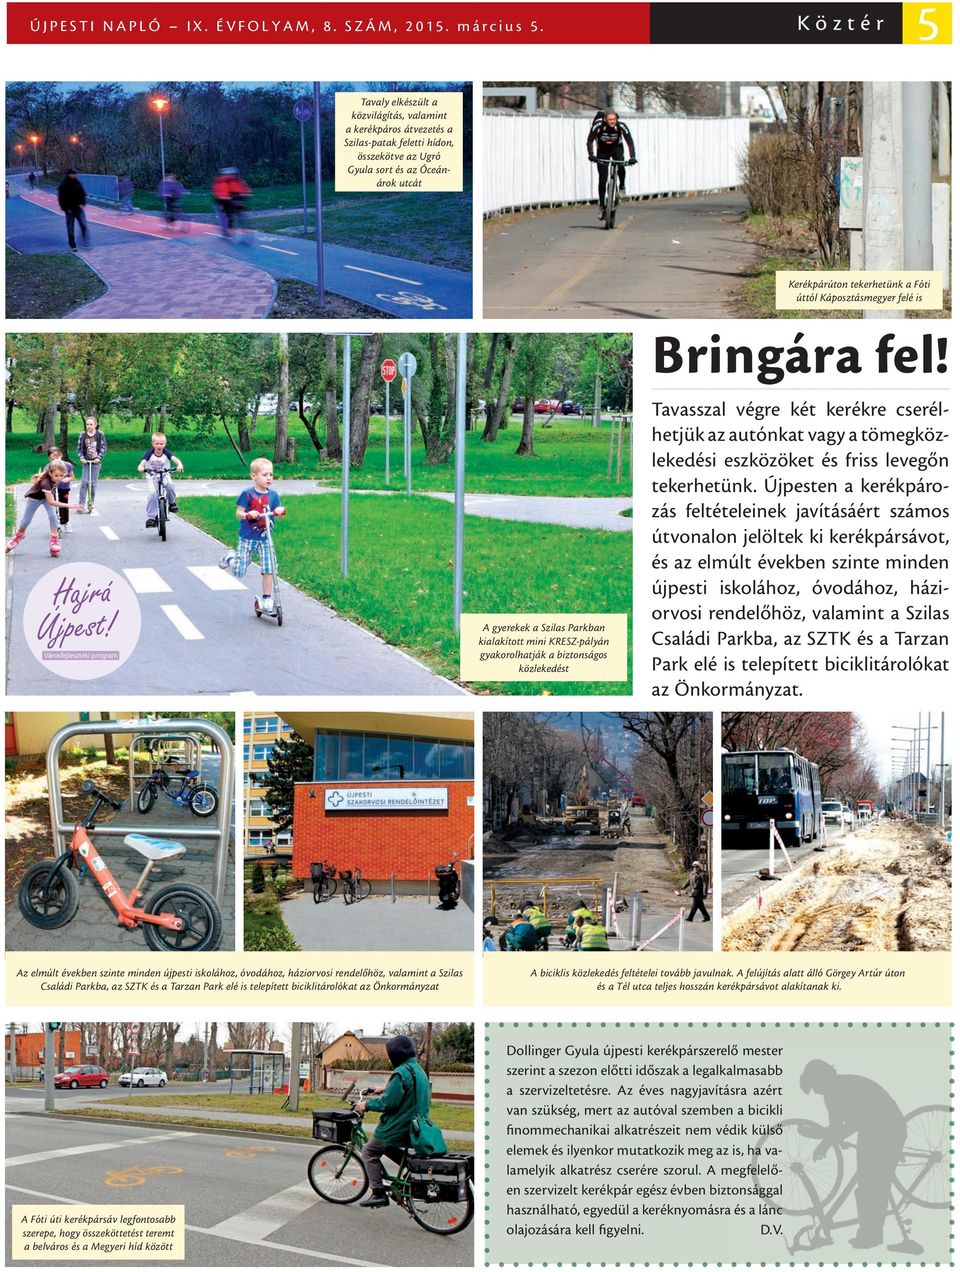 Káposztásmegyer felé is Hajrá Újpest! Városfejlesztési program A gyerekek a Szilas Parkban kialakított mini KRESZ-pályán gyakorolhatják a biztonságos közlekedést Bringára fel!